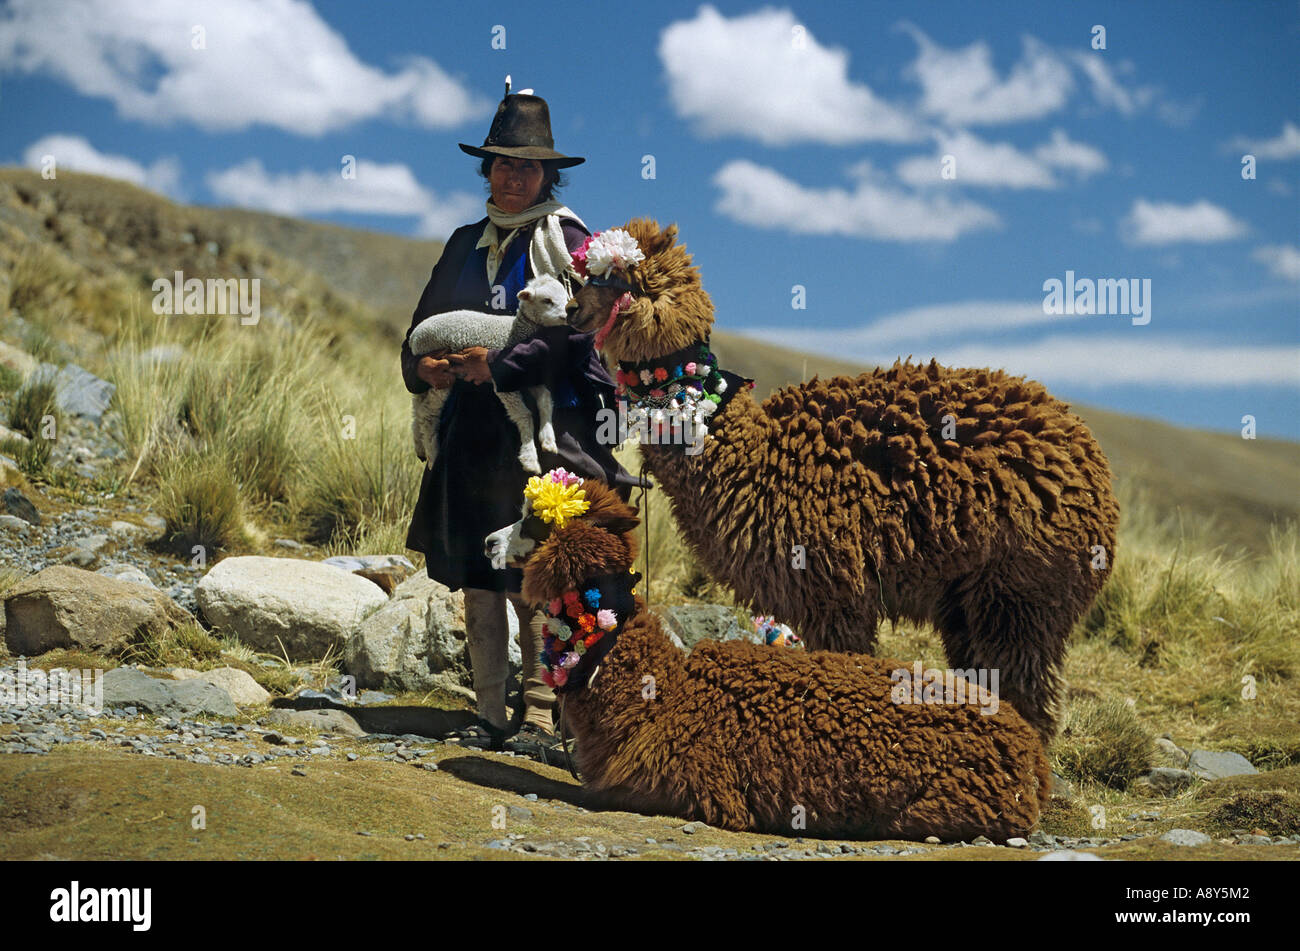 Alpacas (Lamas pacos) dressed up for tourists (Peru).  Alpagas (Lama pacos) décorés pour les touristes (Pérou). Stock Photo